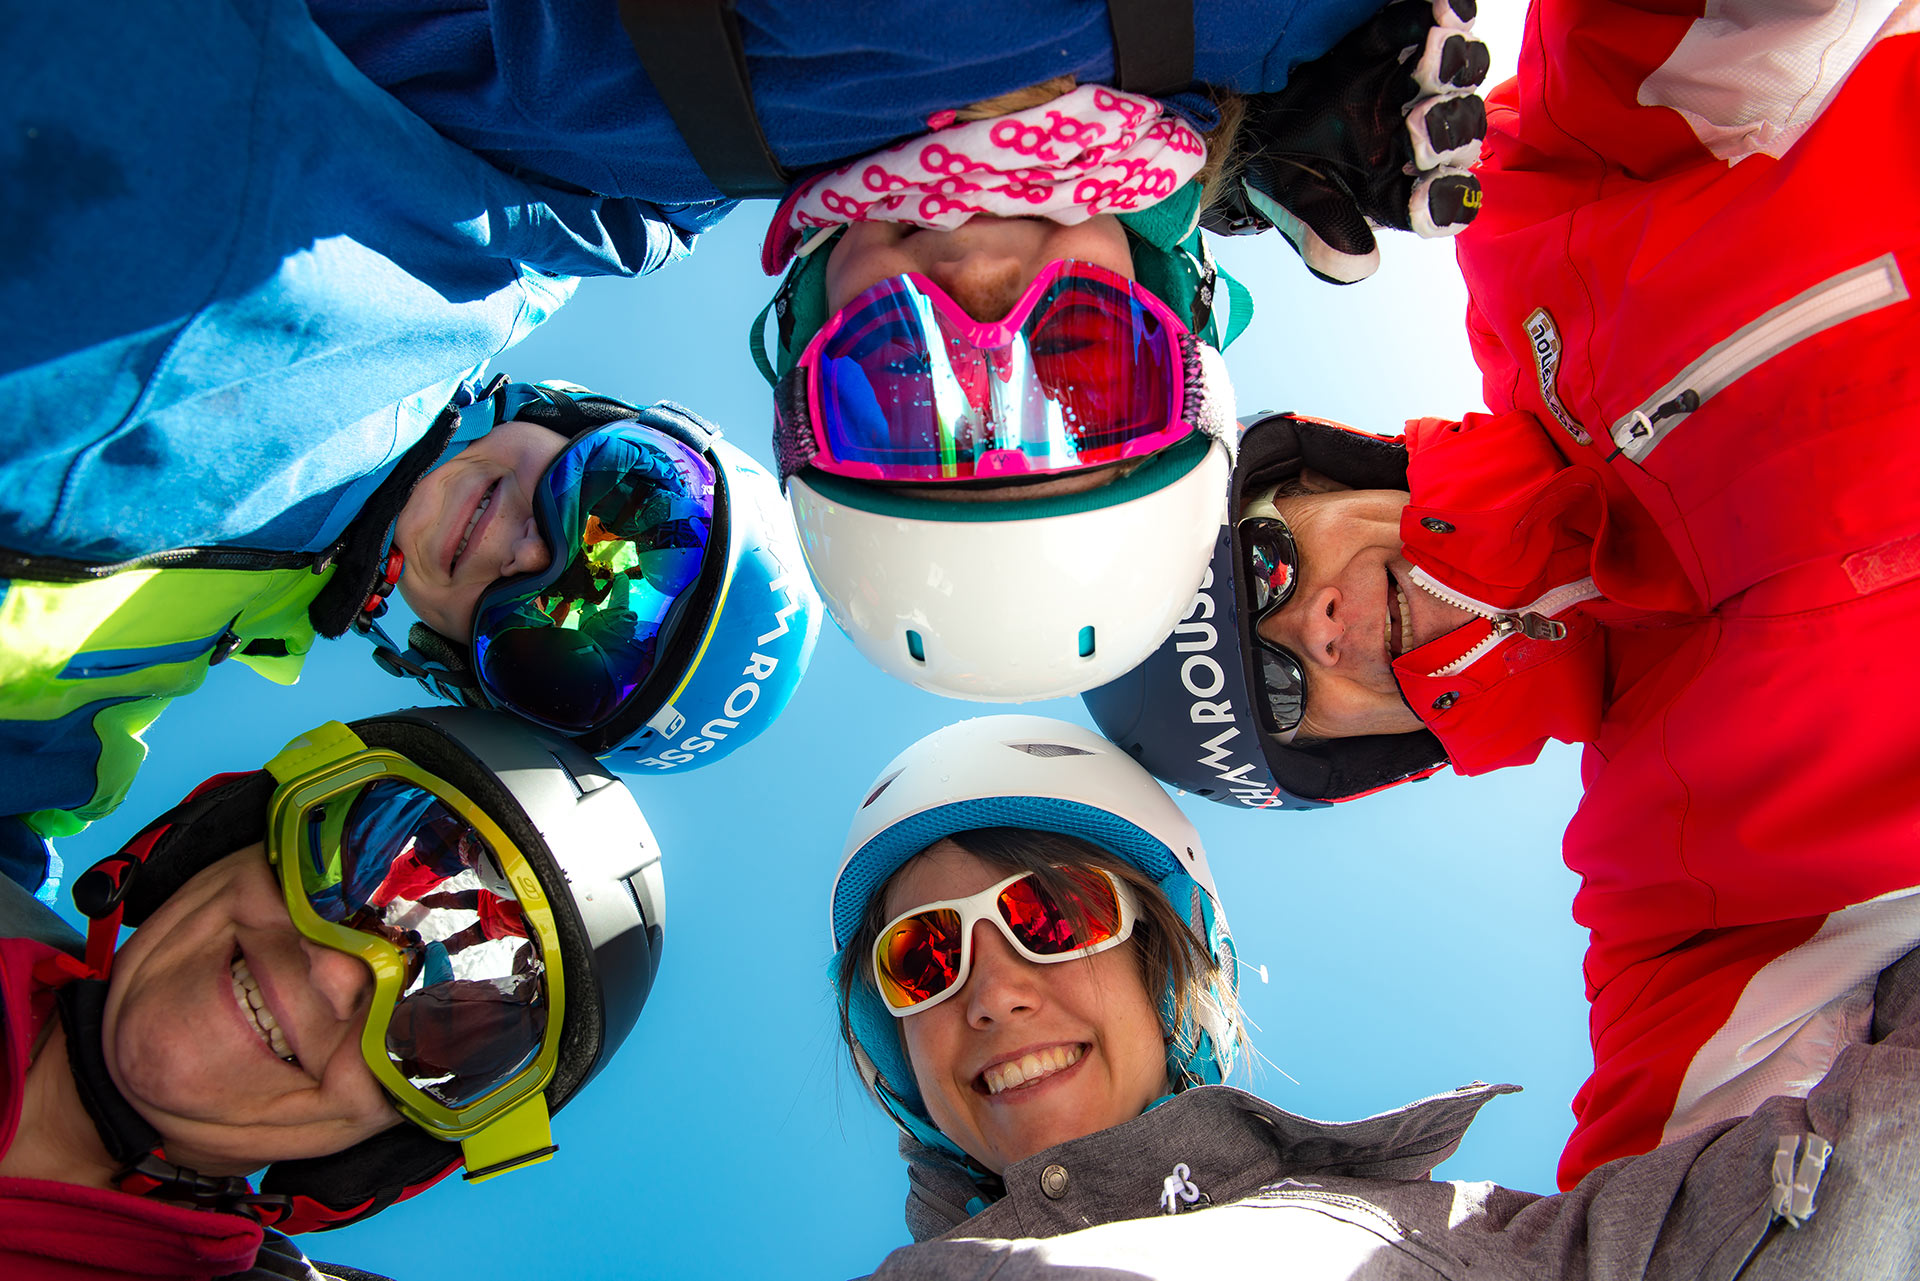 Chamrousse photo famille station ski montagne grenoble lyon isère alpes france - © Images-et-reves.fr